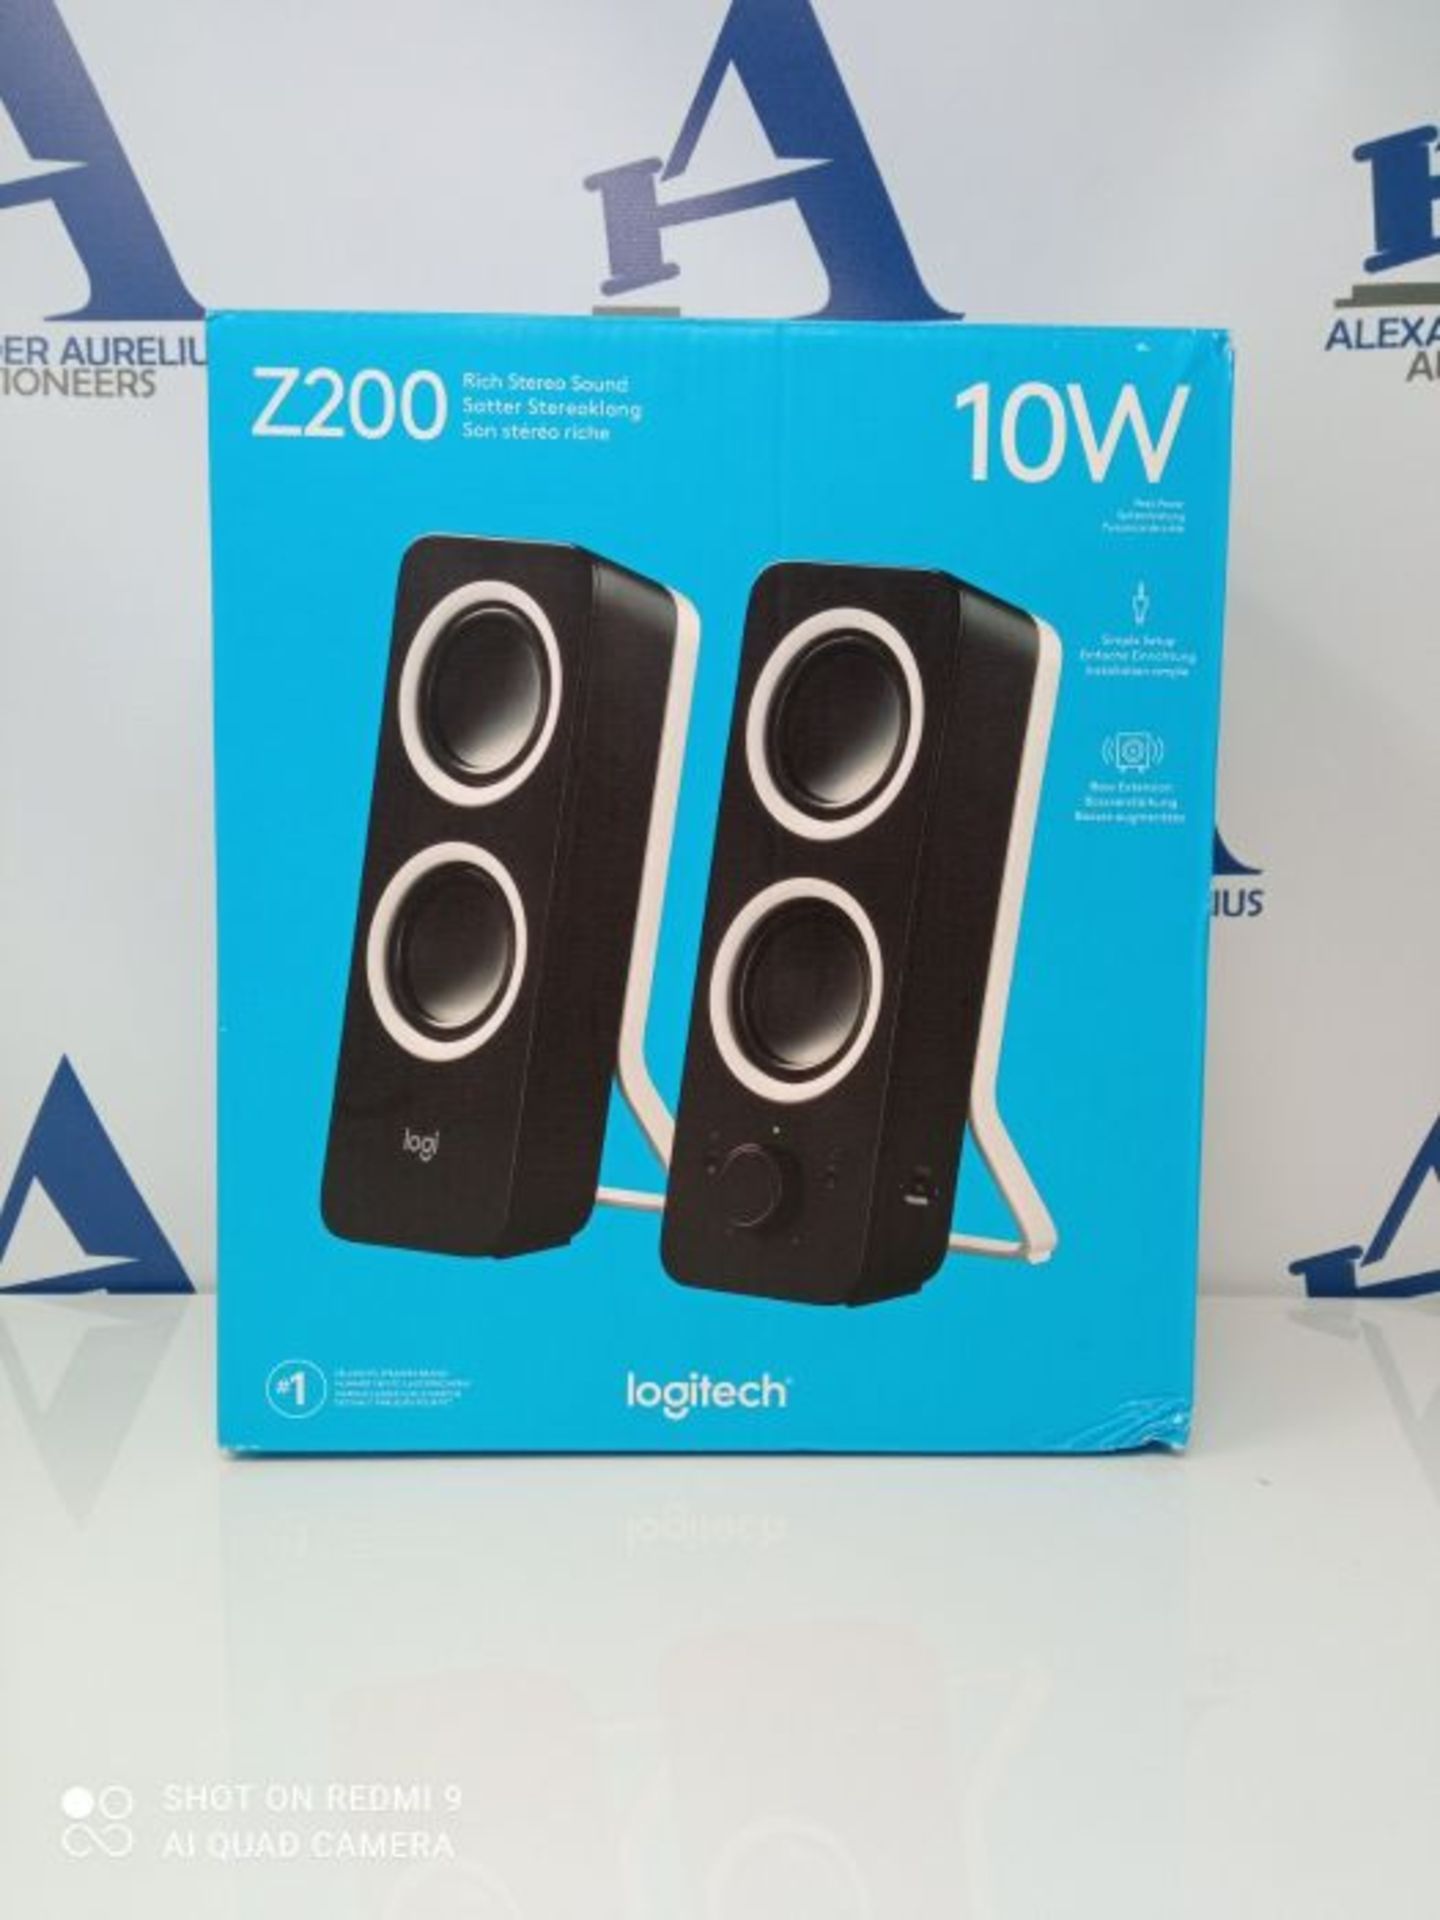 Logitech Z200 2.0 Lautsprecher mit Subwoofer, Surround Sound, 10 Watt Spitzenleistung,